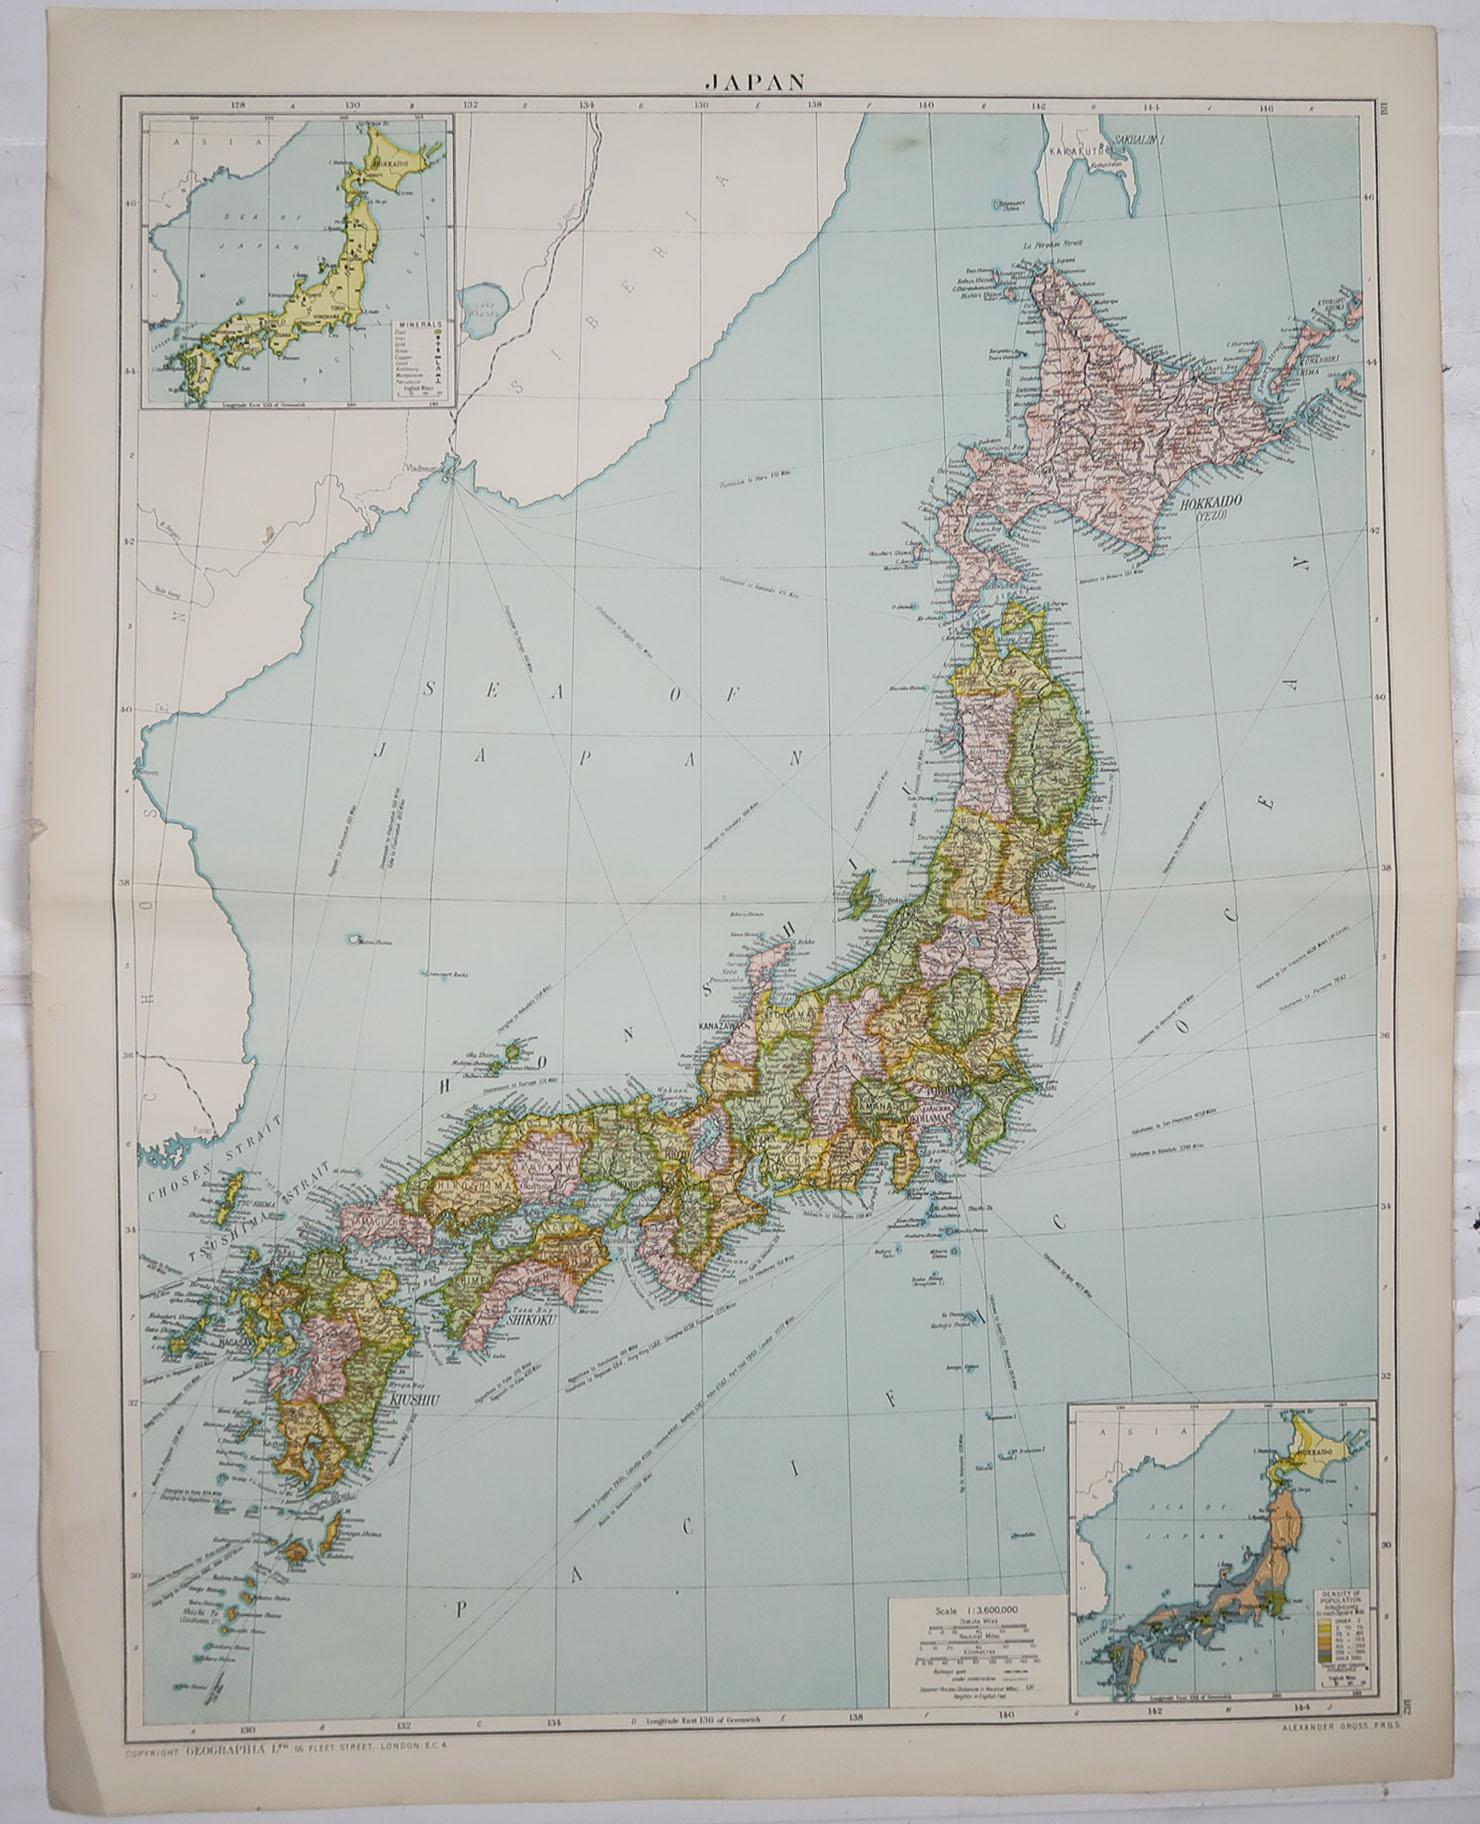 English Large Original Vintage Map of Japan, circa 1920